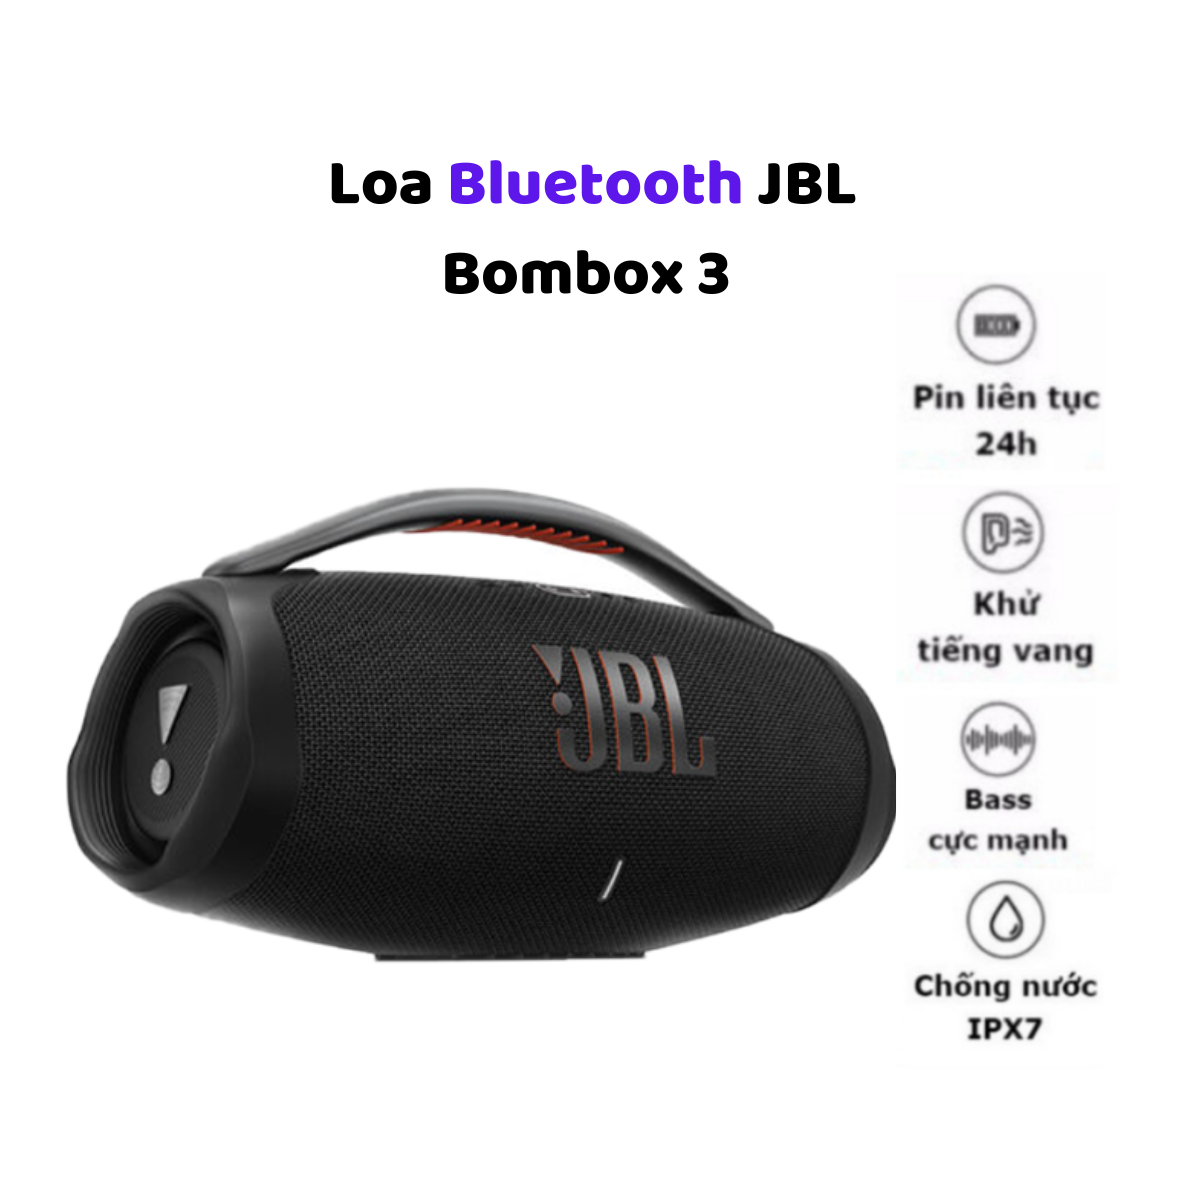 { Bản Quốc Tế } Loa Bluetooth JBL Bombox 3 (100W){ 2023}- Loa Nghe Nhạc Âm Thanh Siêu Bass Cực Mạnh Chống Nước IPX7 Loa Karaoke Công Suất Cực Lớn Loa Nghe Nhạc Treble Rời Thời Gian Sử Dụng 24h